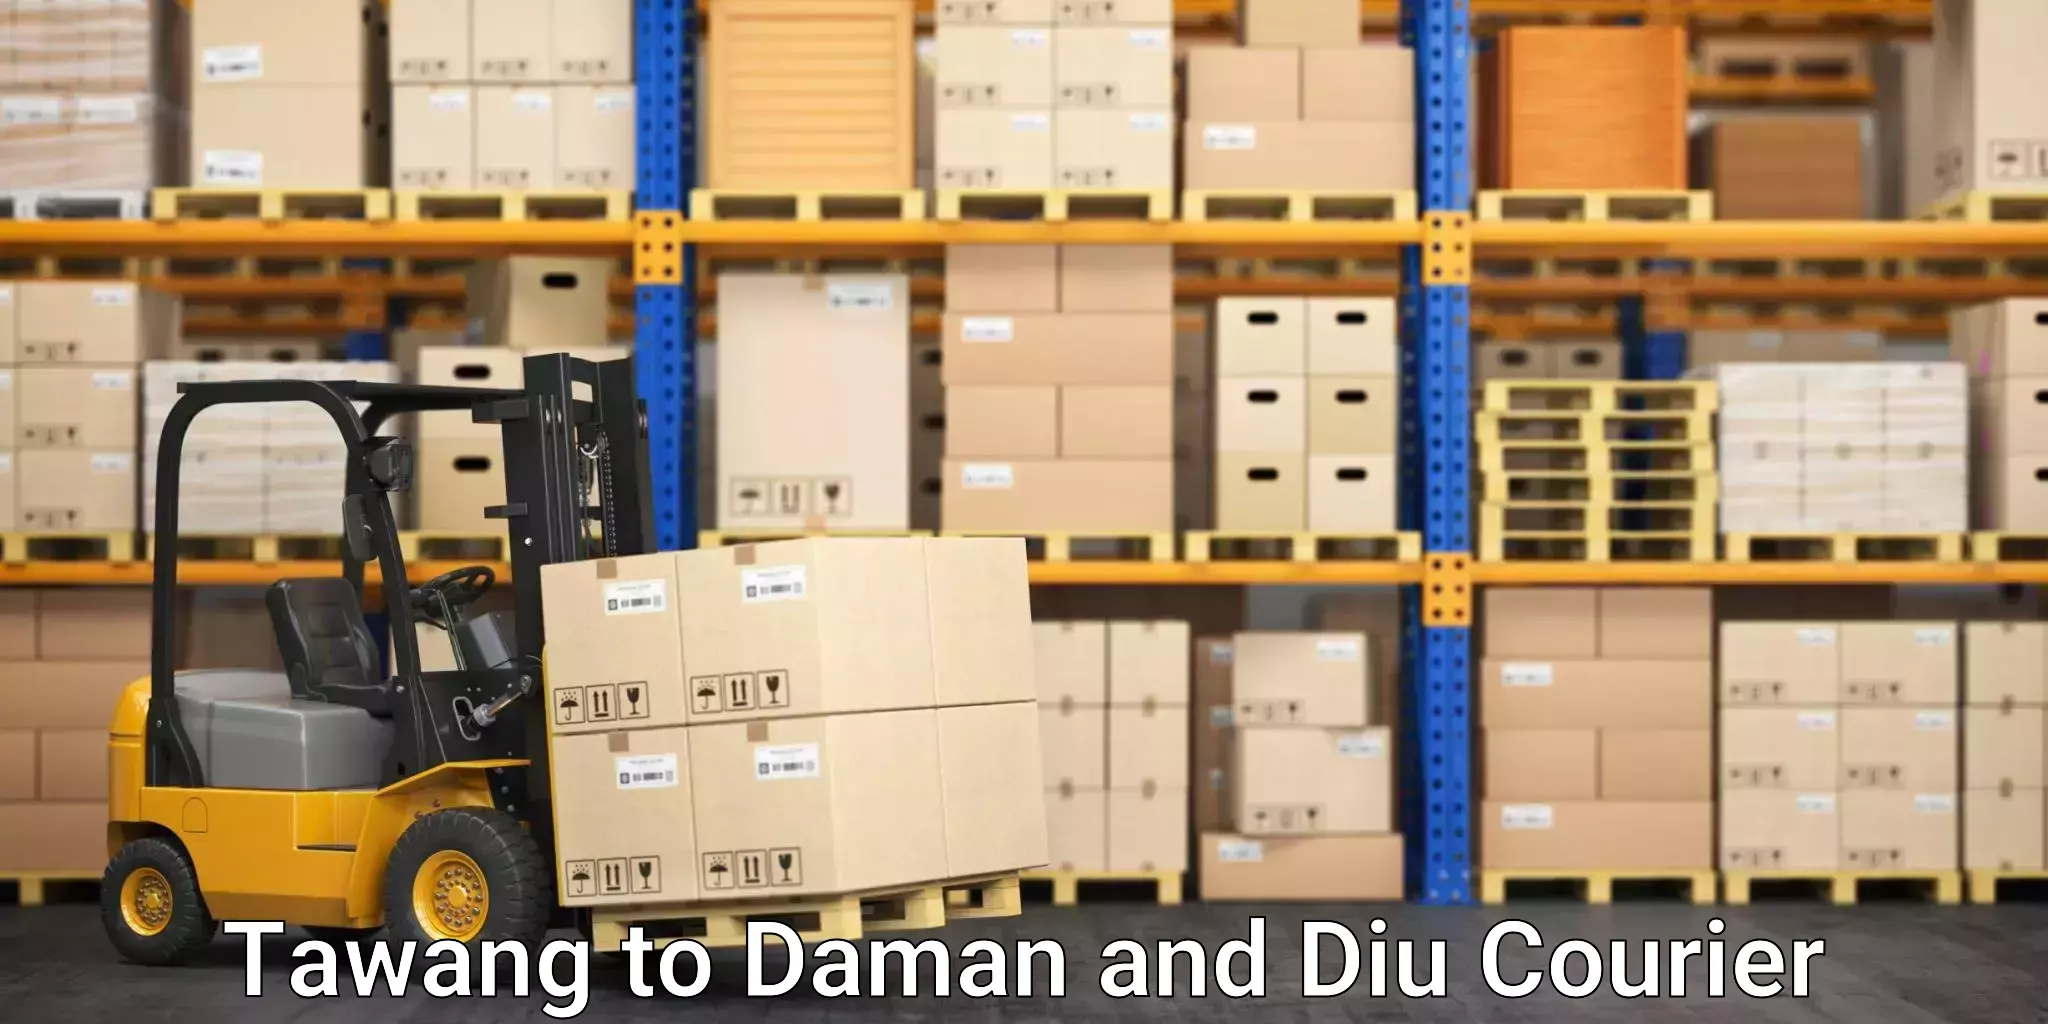 Automated shipping processes Tawang to Diu